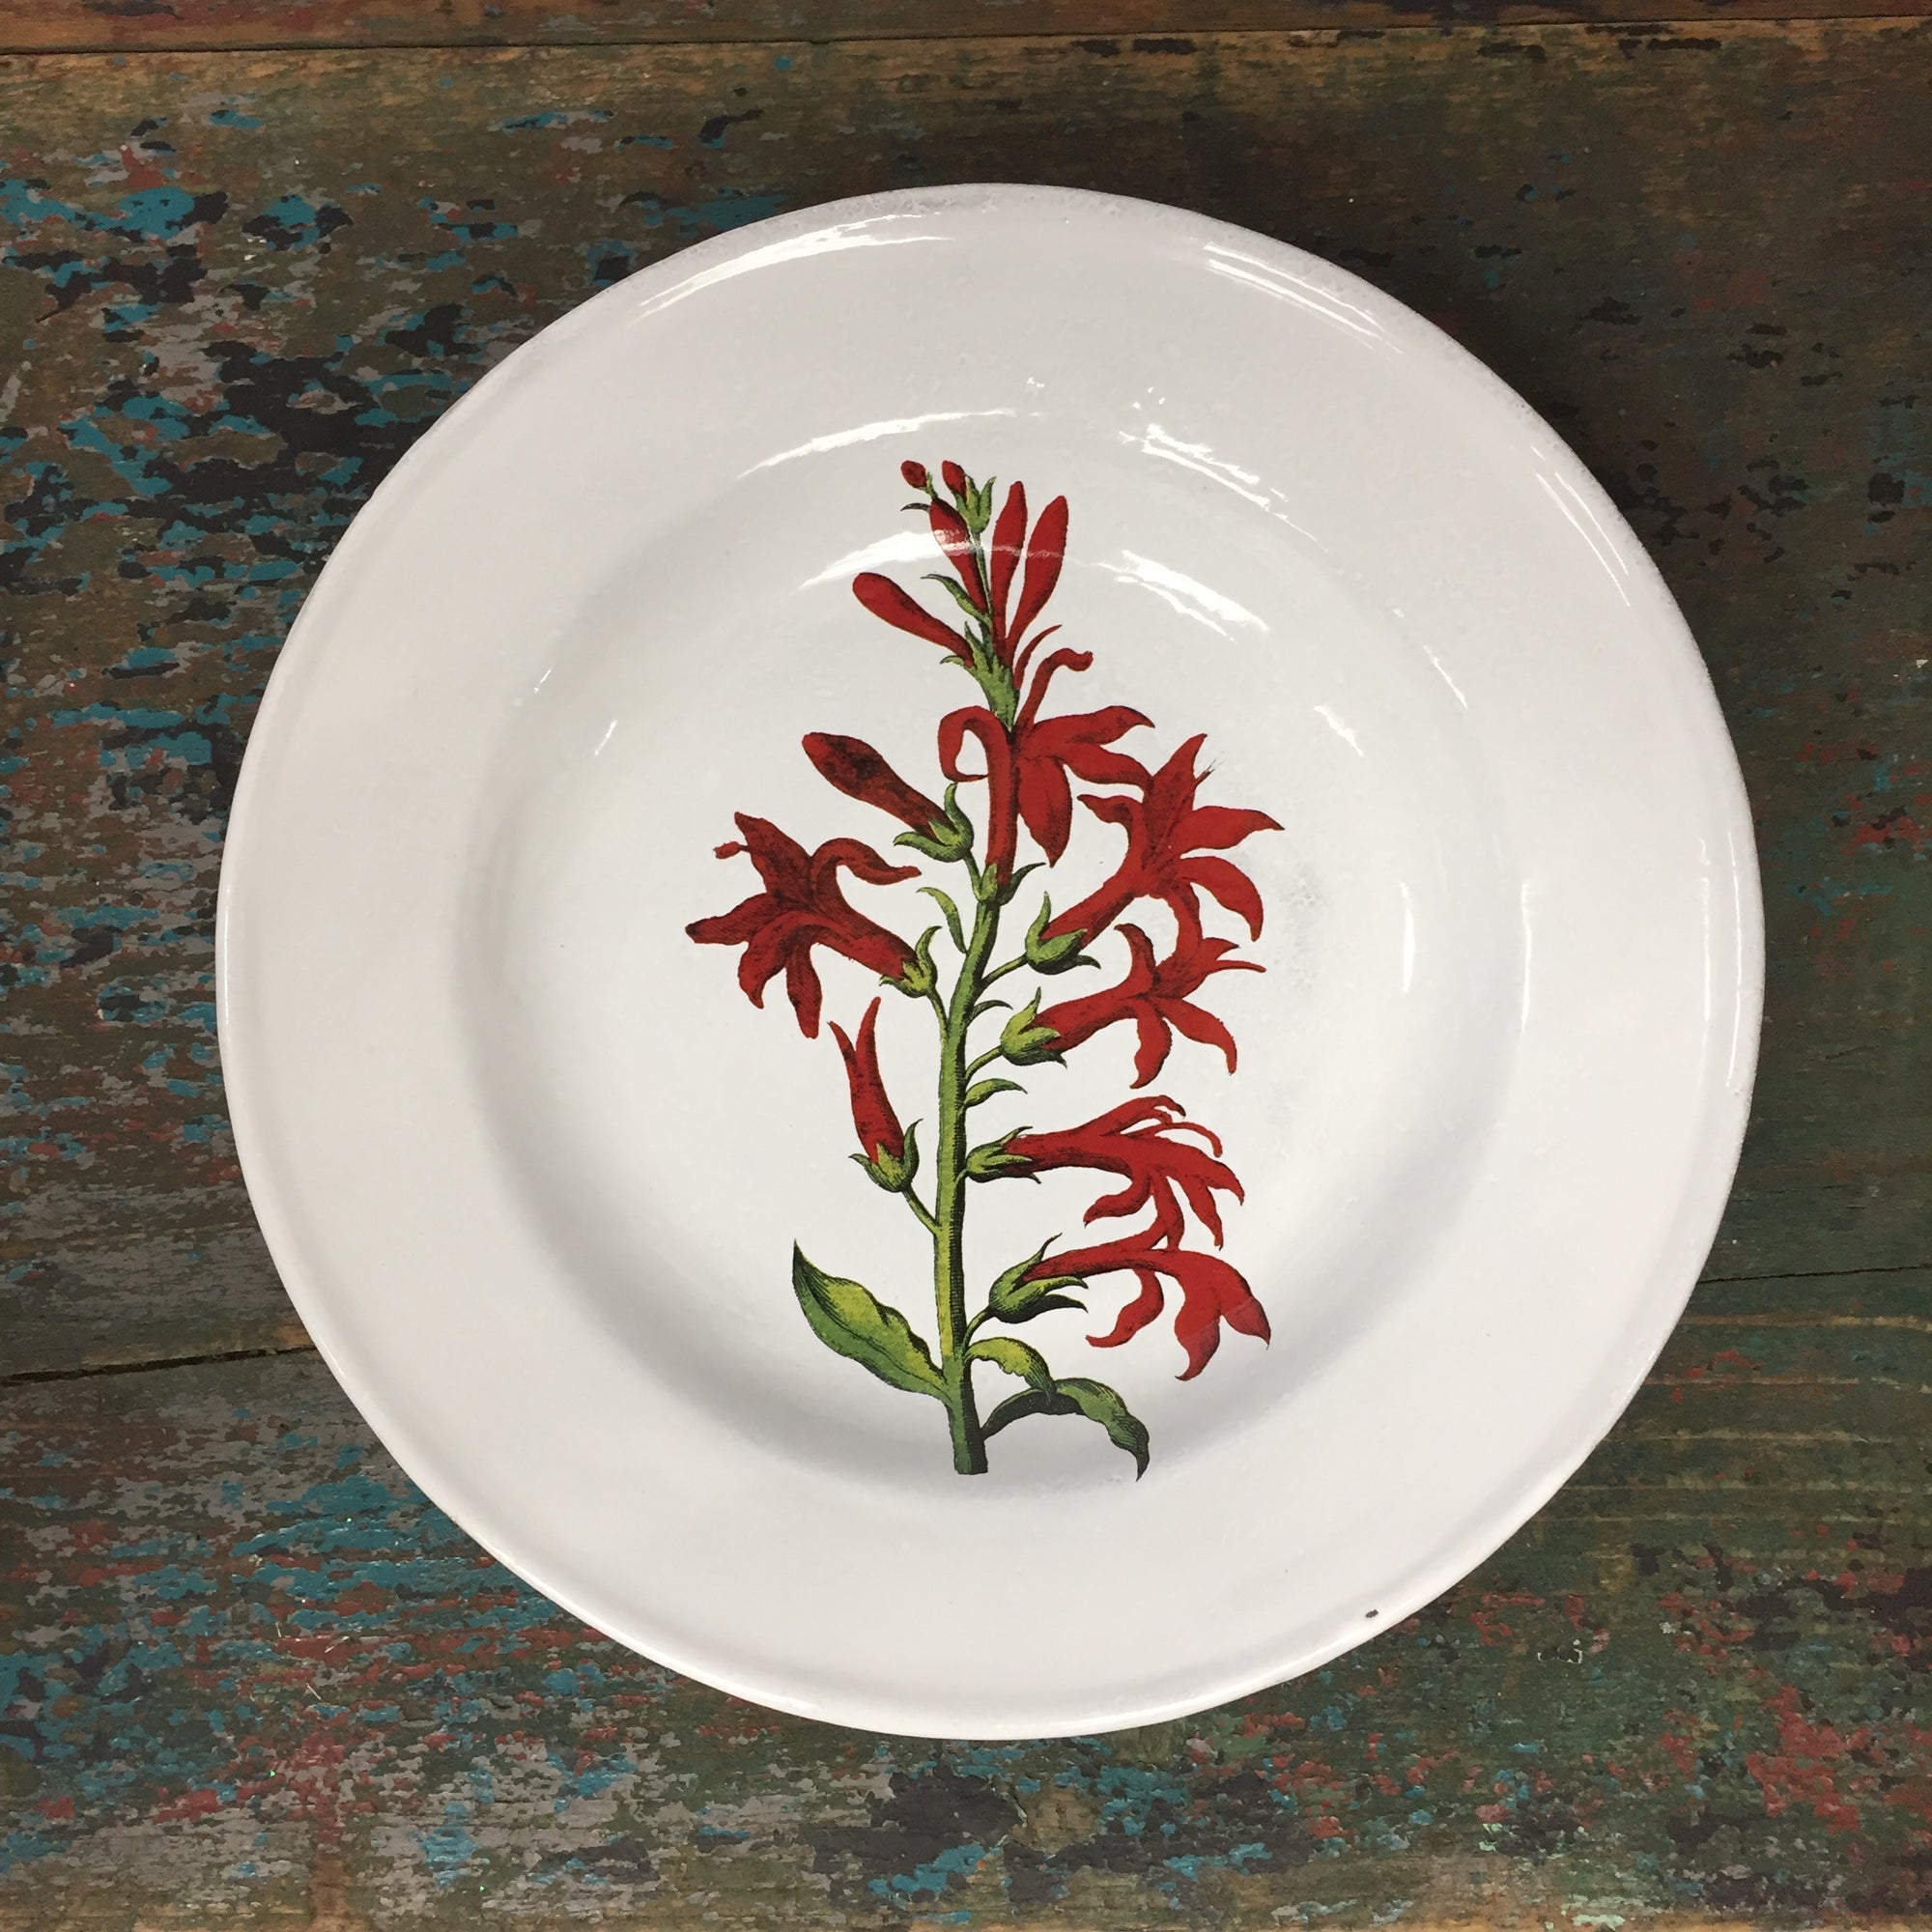 Astier de Villatte John Derian Cardinal Flower Soup Plate